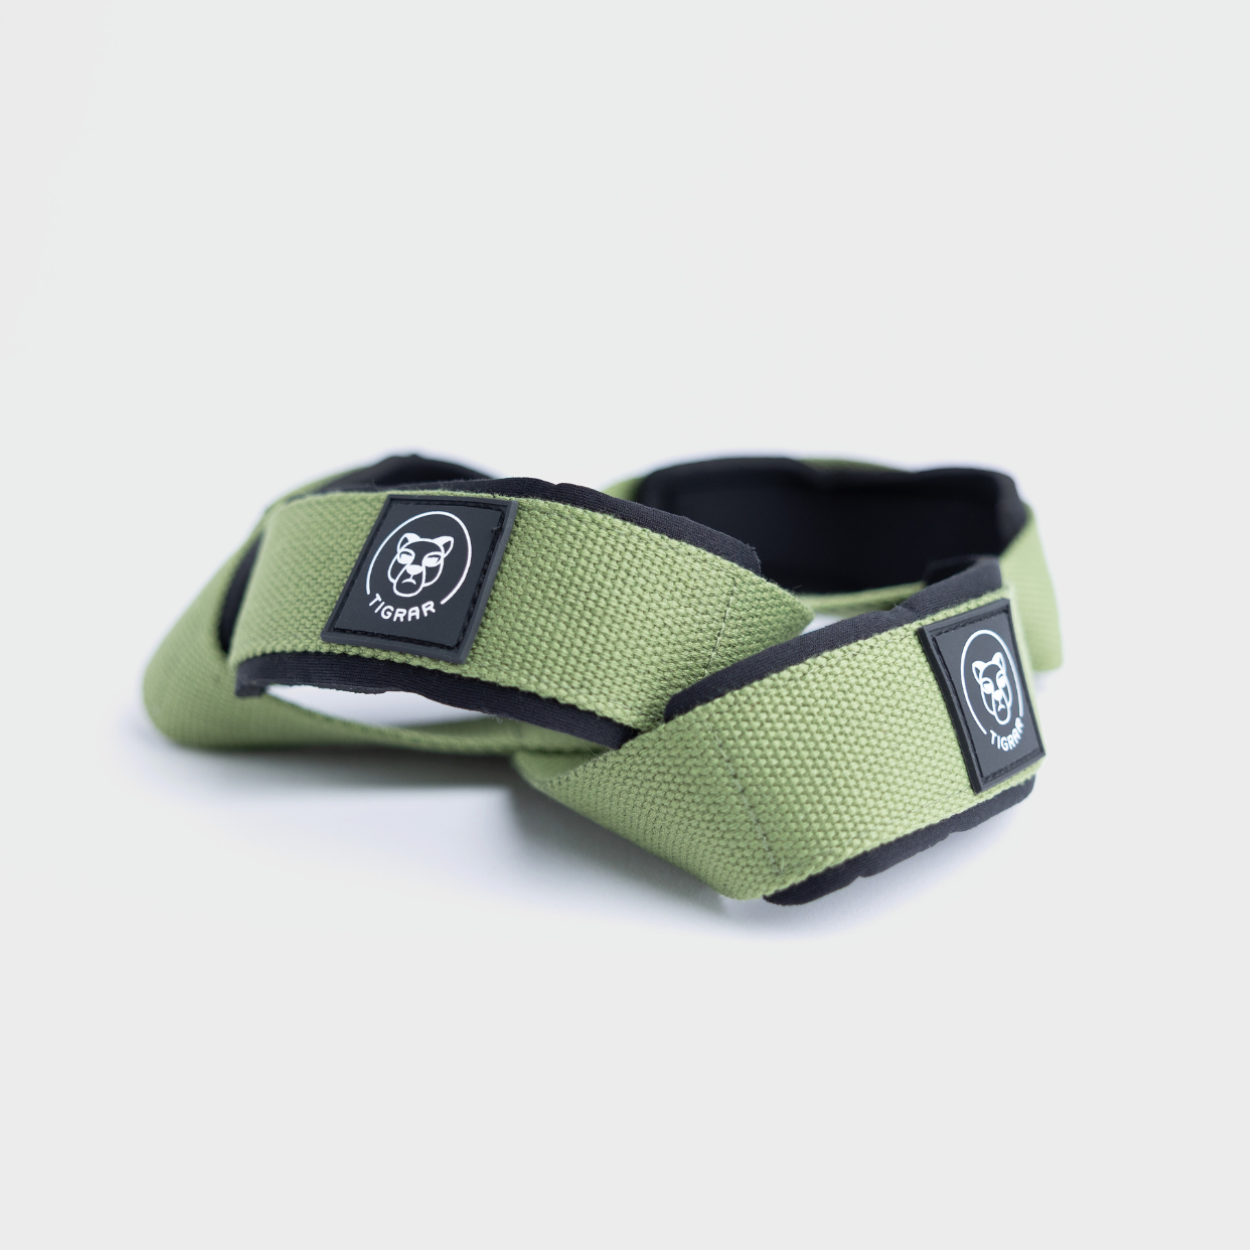 Tigrar's groene Figure 8 straps, perfect voor versterkende oefeningen, gepresenteerd op een grijze achtergrond.